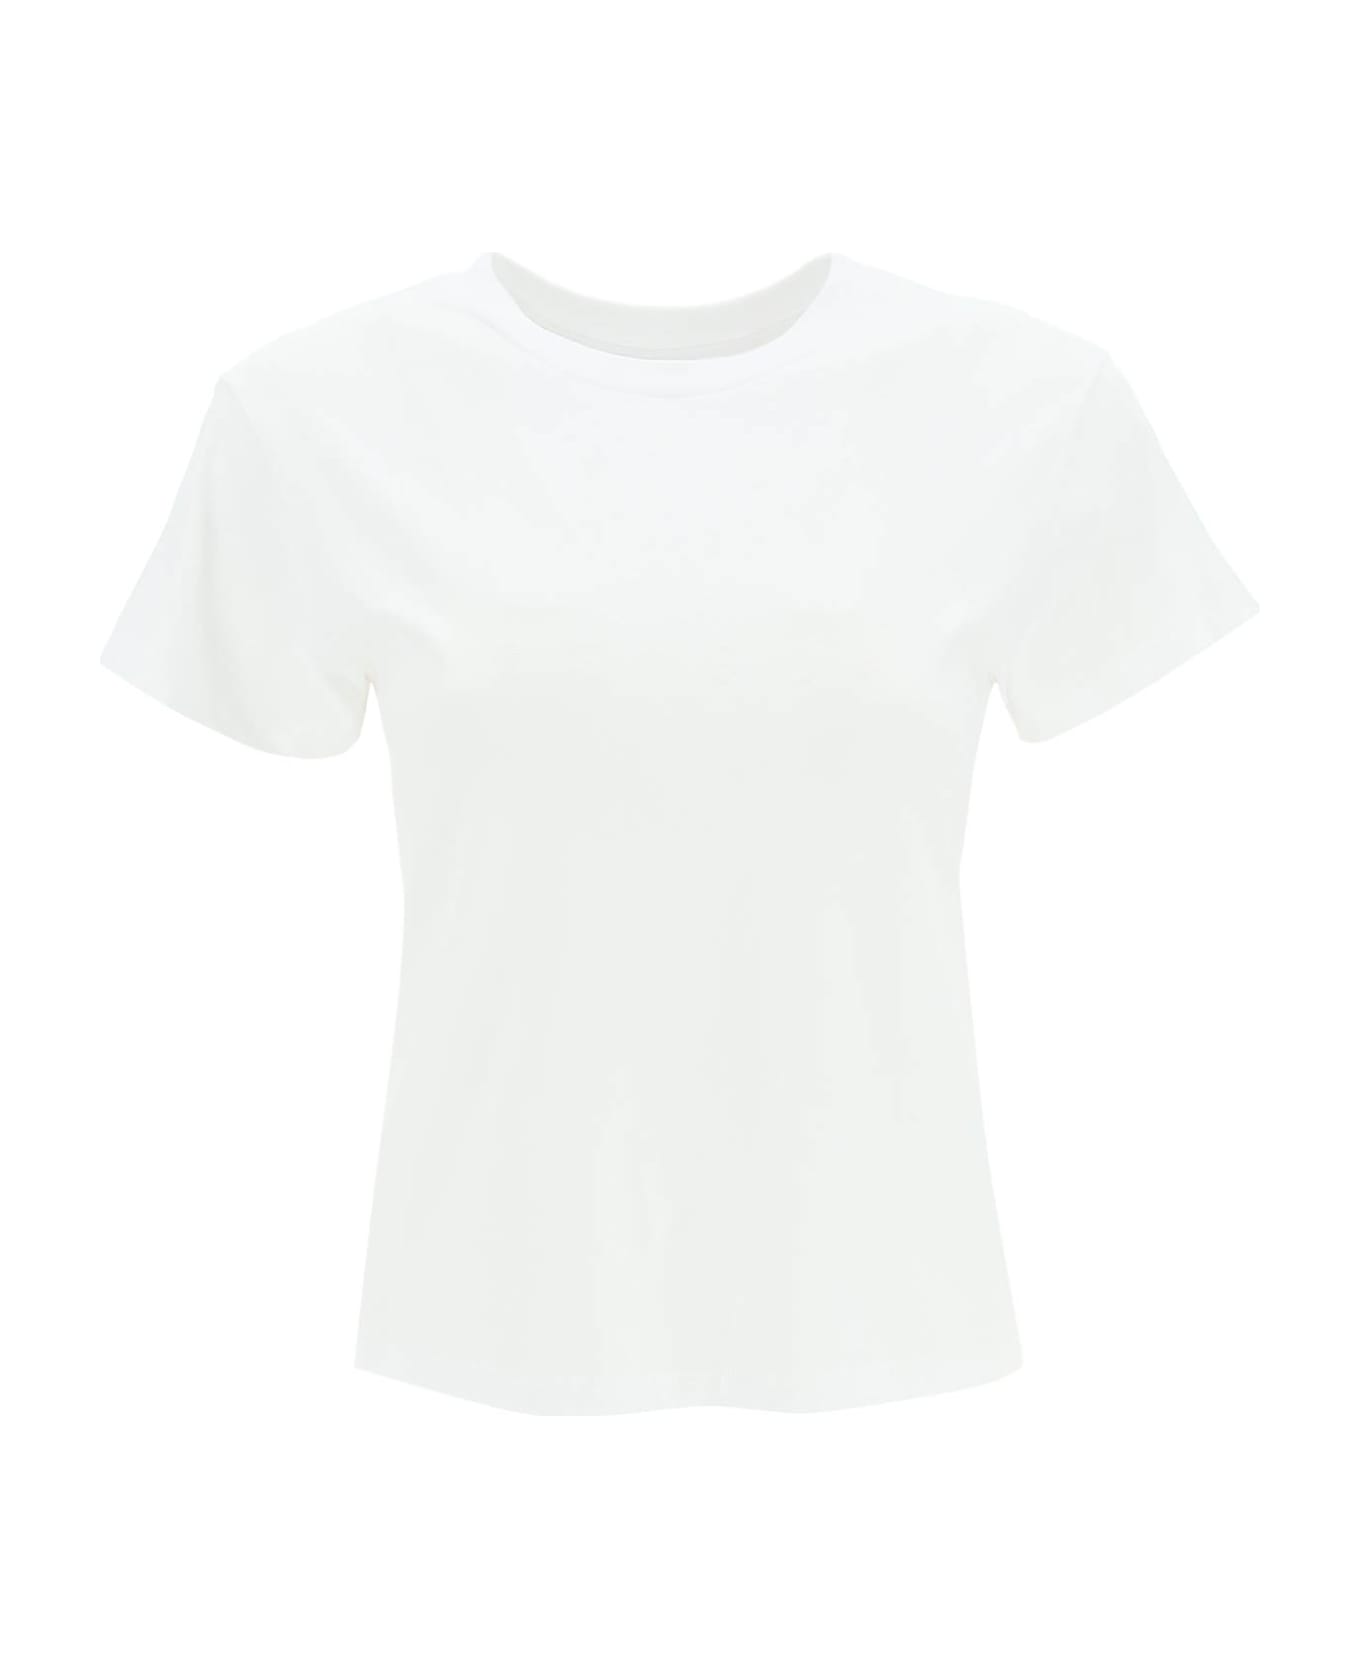 MM6 Maison Margiela Logo Cotton T-shirt - White Tシャツ